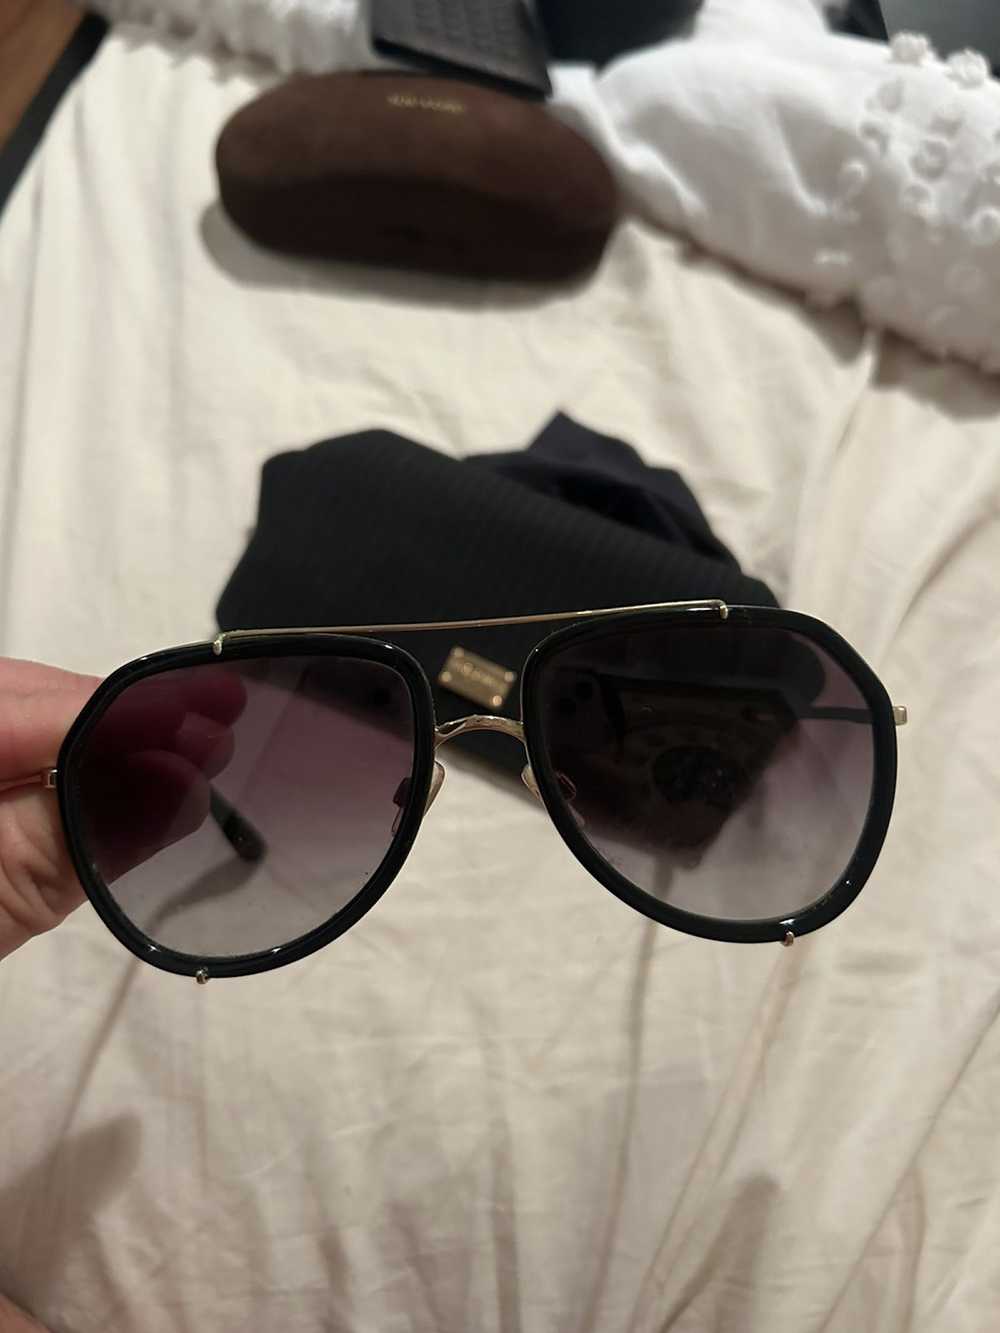 Dolce & Gabbana Dolce and Gabbana sunglasses - image 3